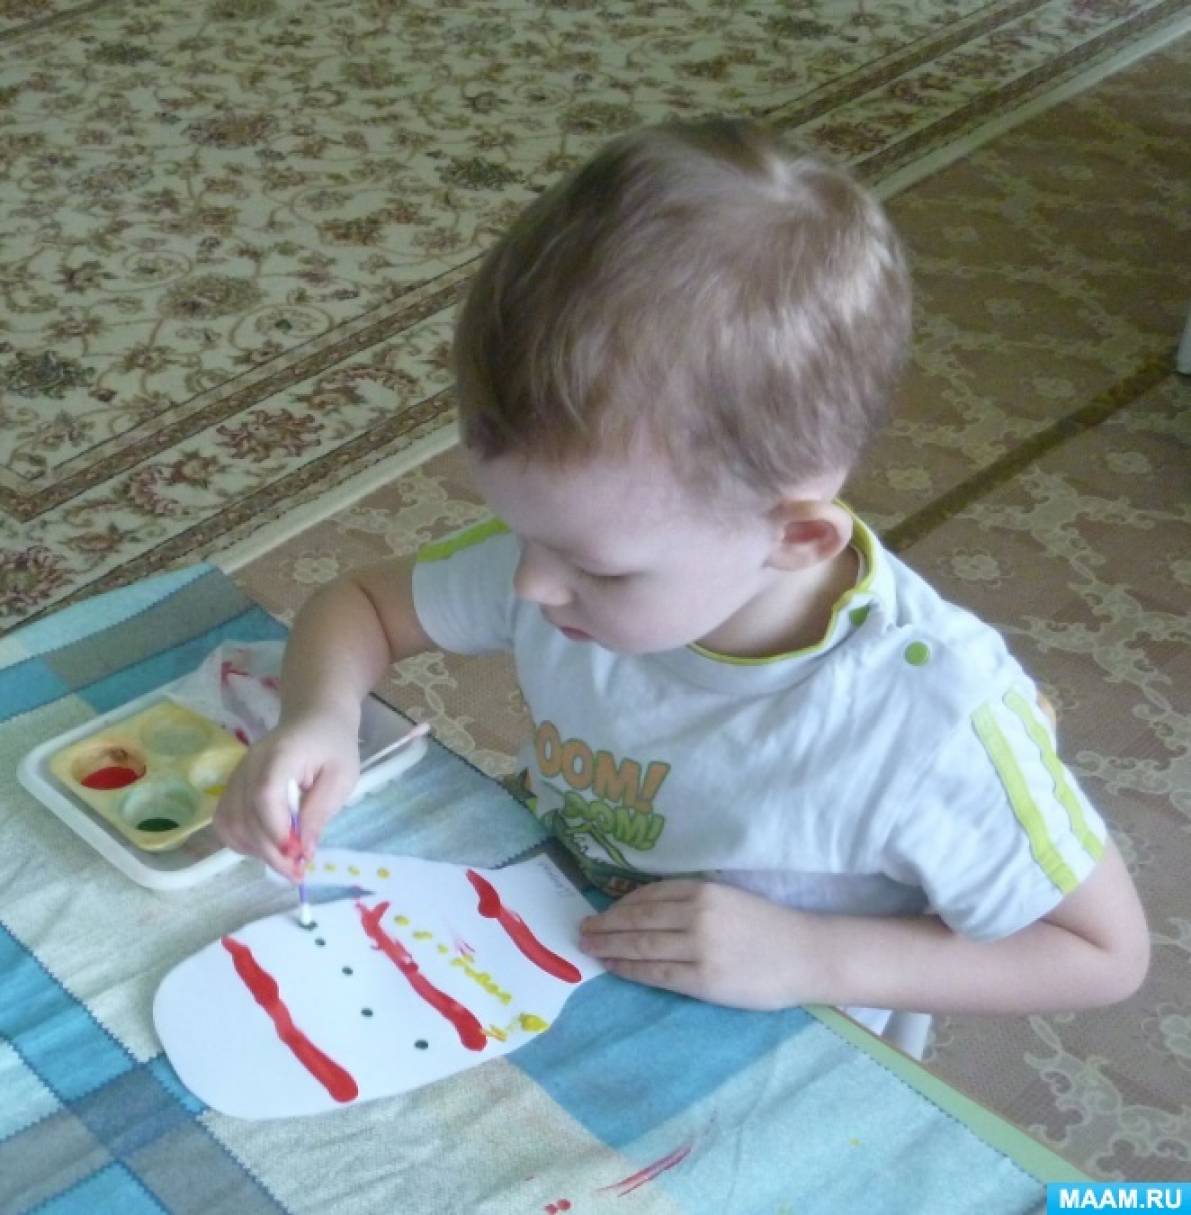 Конспект занятия по рисованию пальчиком и ватными палочками во второй группе раннего возраста «Украсим варежки для кукол»